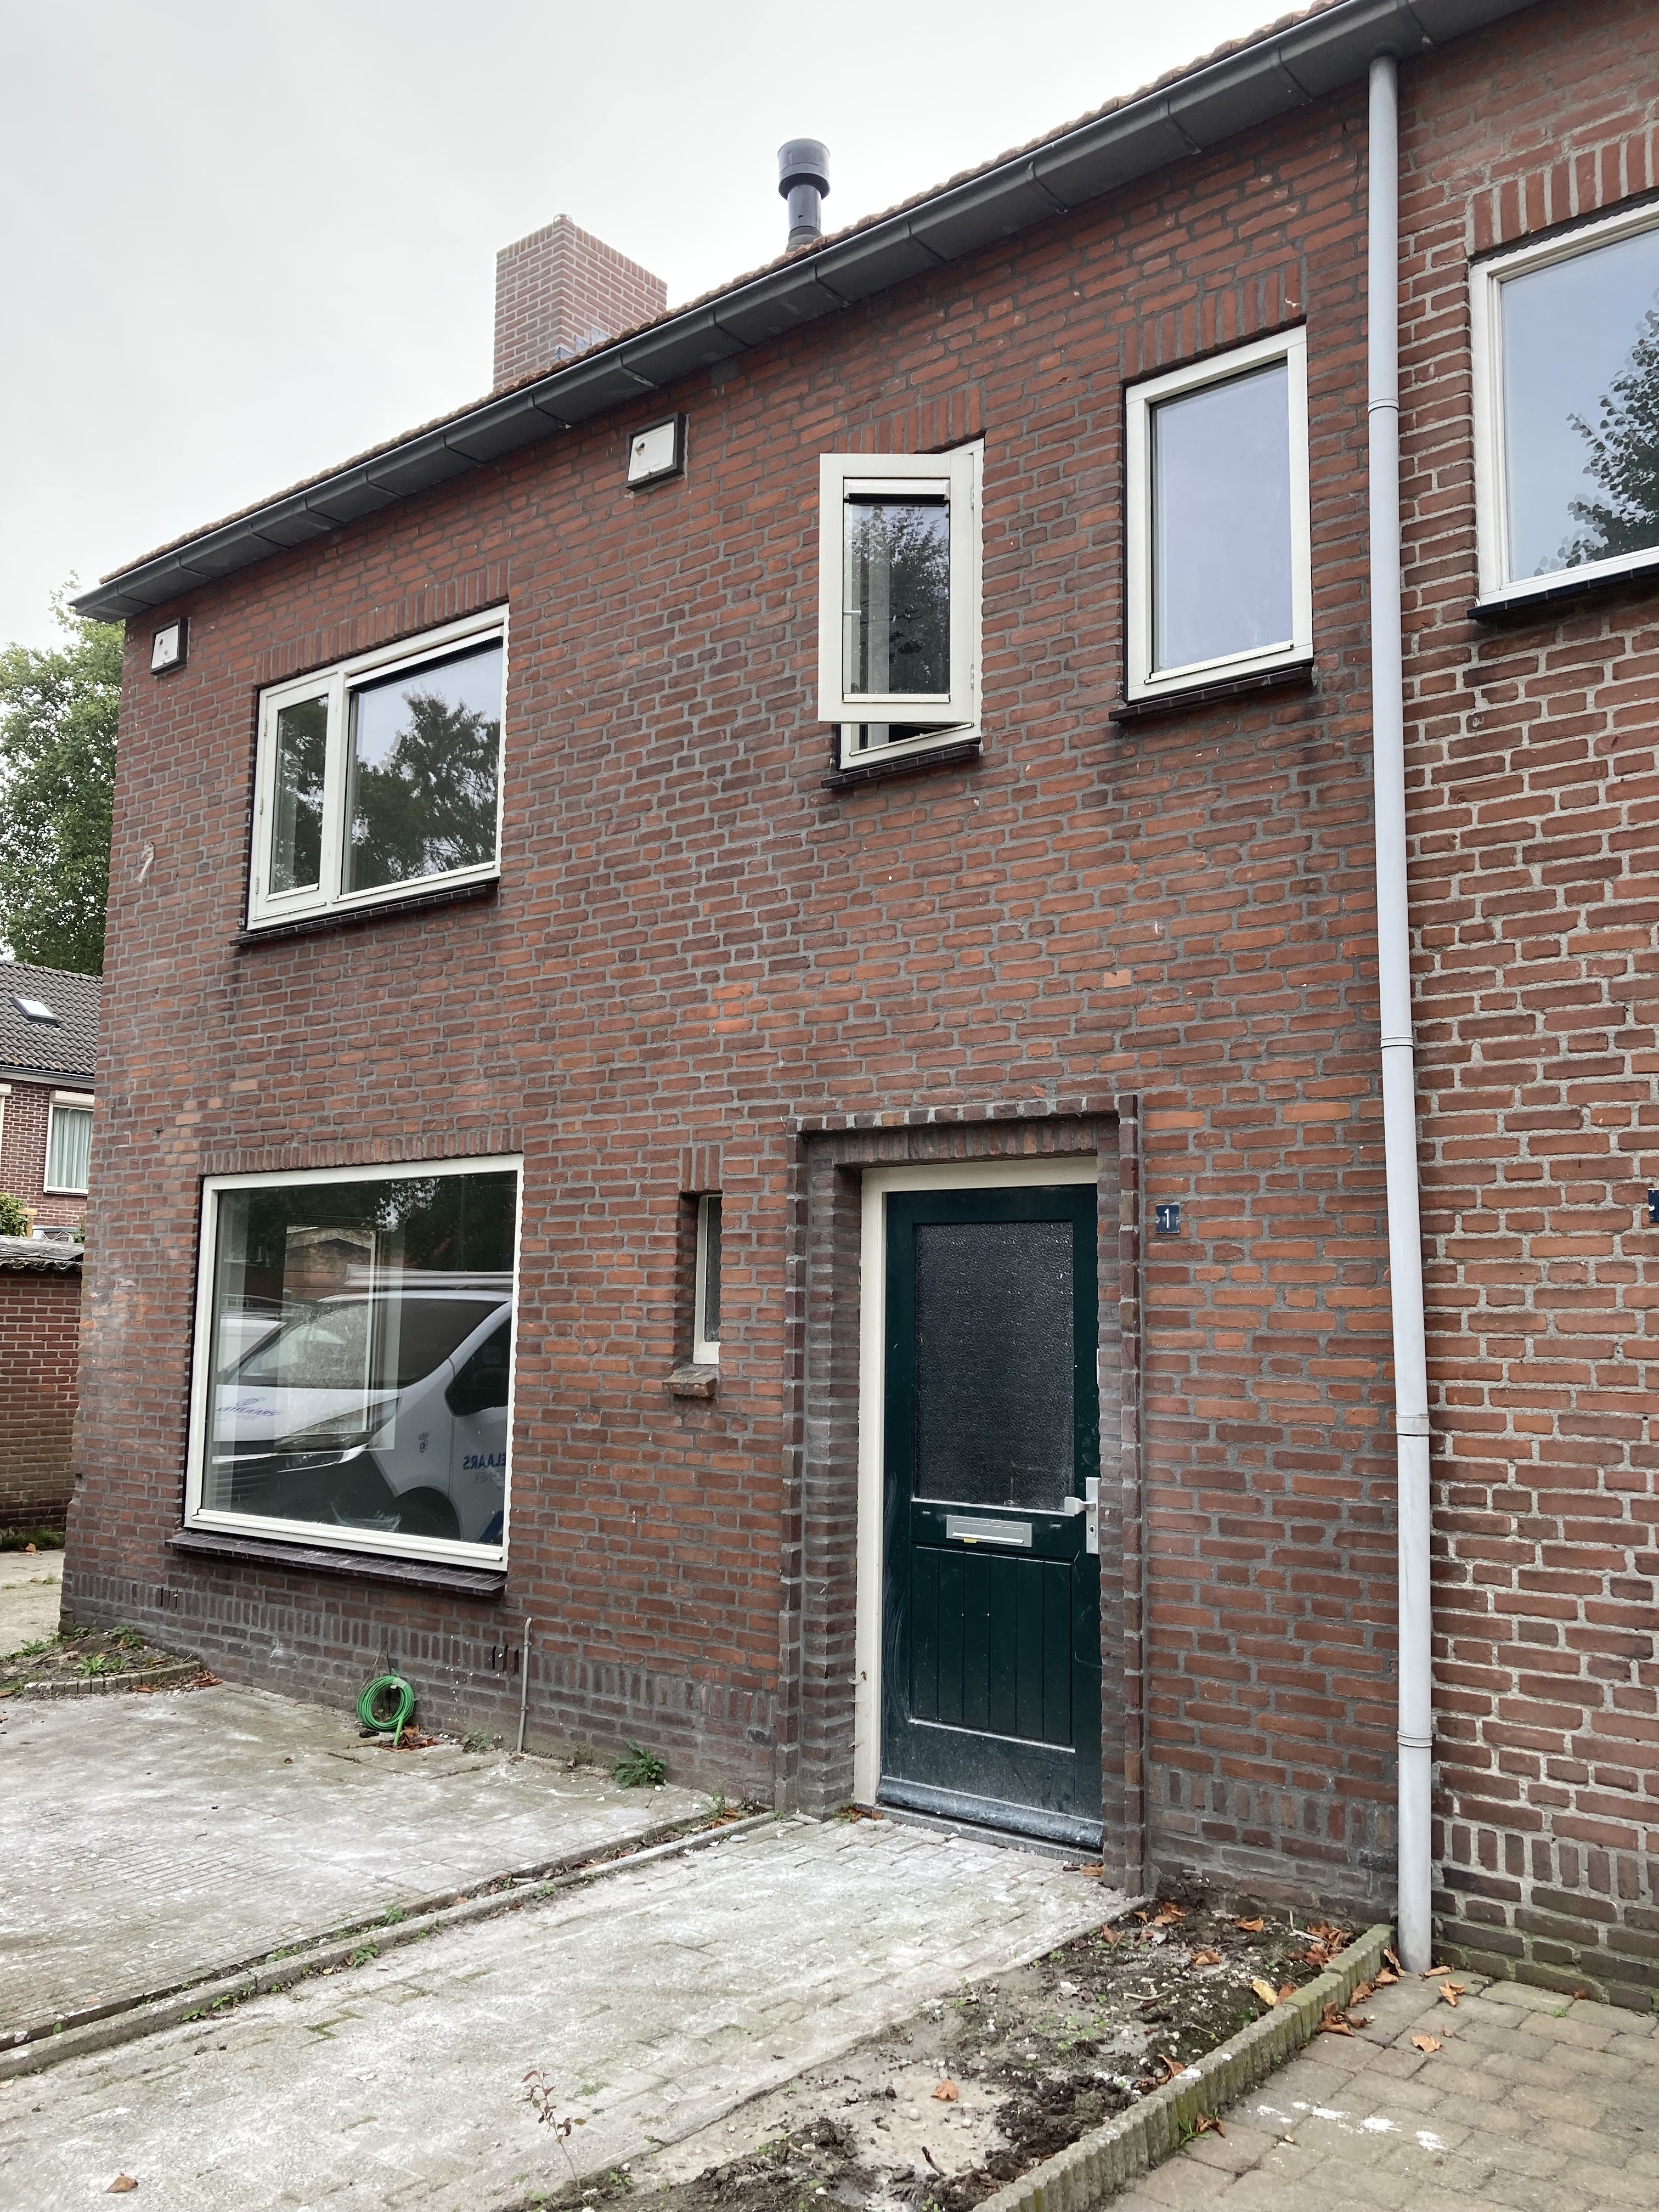 Plesmanstraat 1, 5061 SW Oisterwijk, Nederland